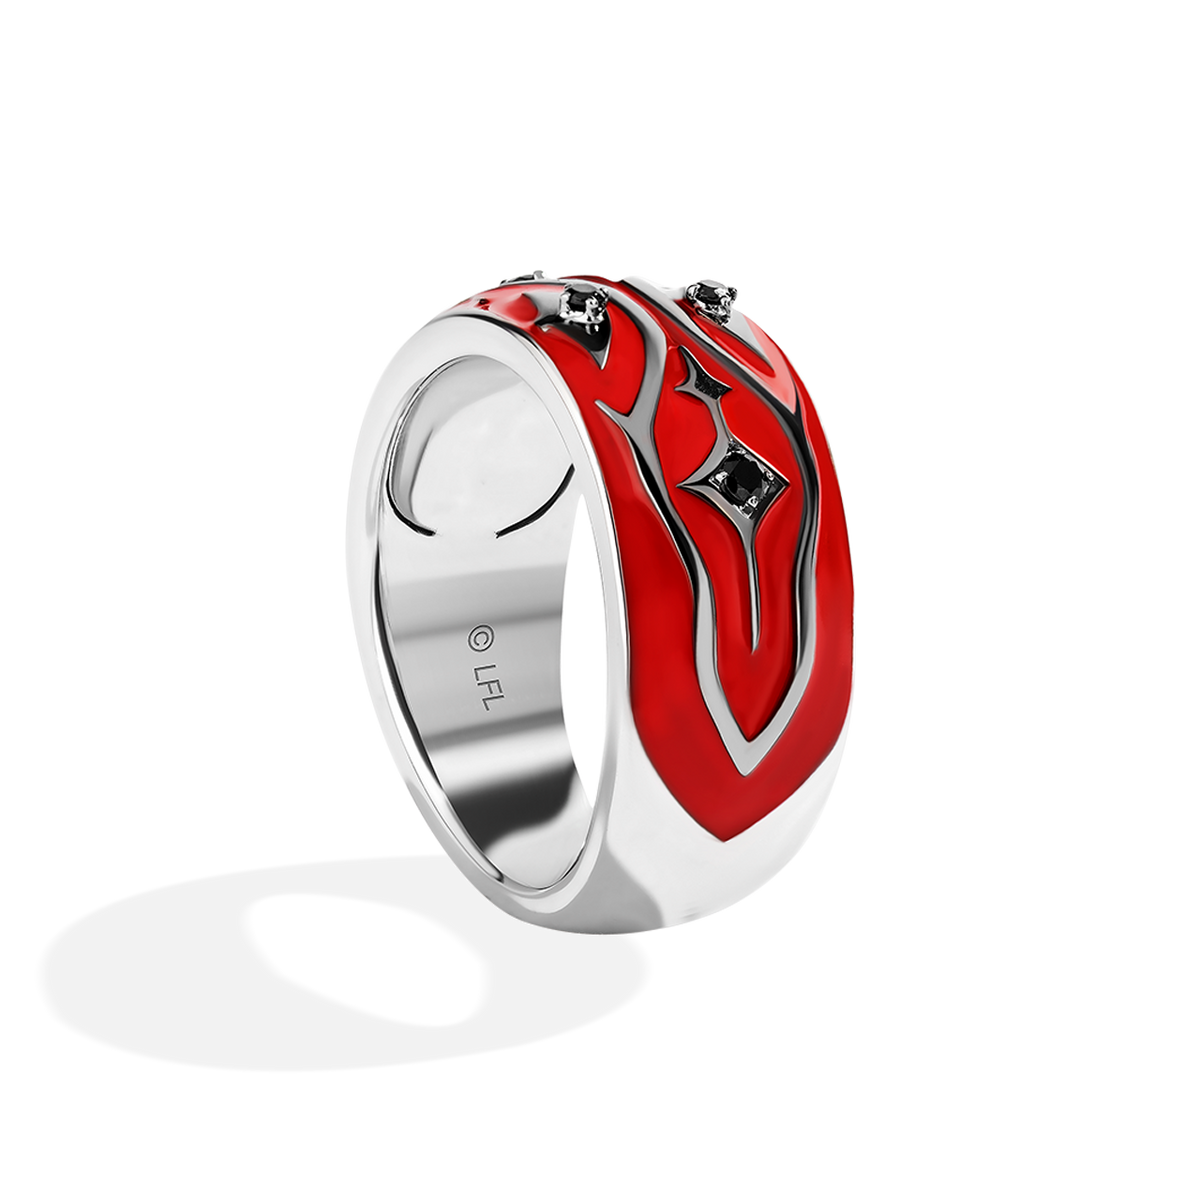 Buy Naruto Itachi Uchiha Sharingan Cosplay Ring Online at desertcartINDIA